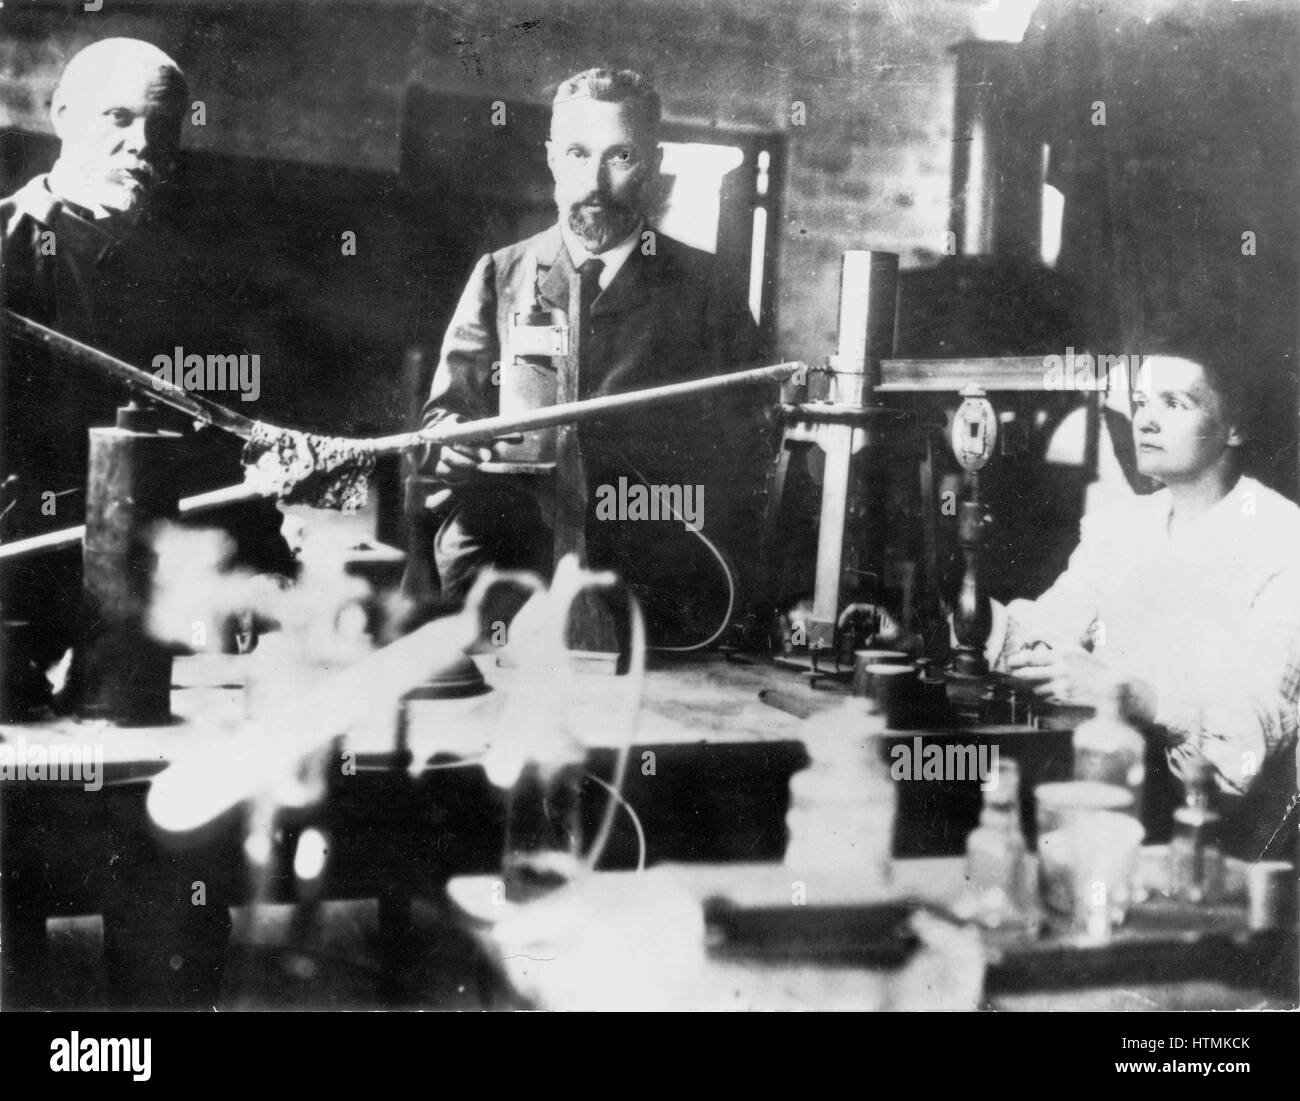 Marie Curie (1867-1935) Polen geborenen französischen Physiker, die mit ihrem Ehemann Pierre (1859-1906), Zentrum, Forschung über Radioaktivität durchgeführt und mit ihm und Henri Becquerel 1903 den Nobelpreis für Physik geteilt Stockfoto